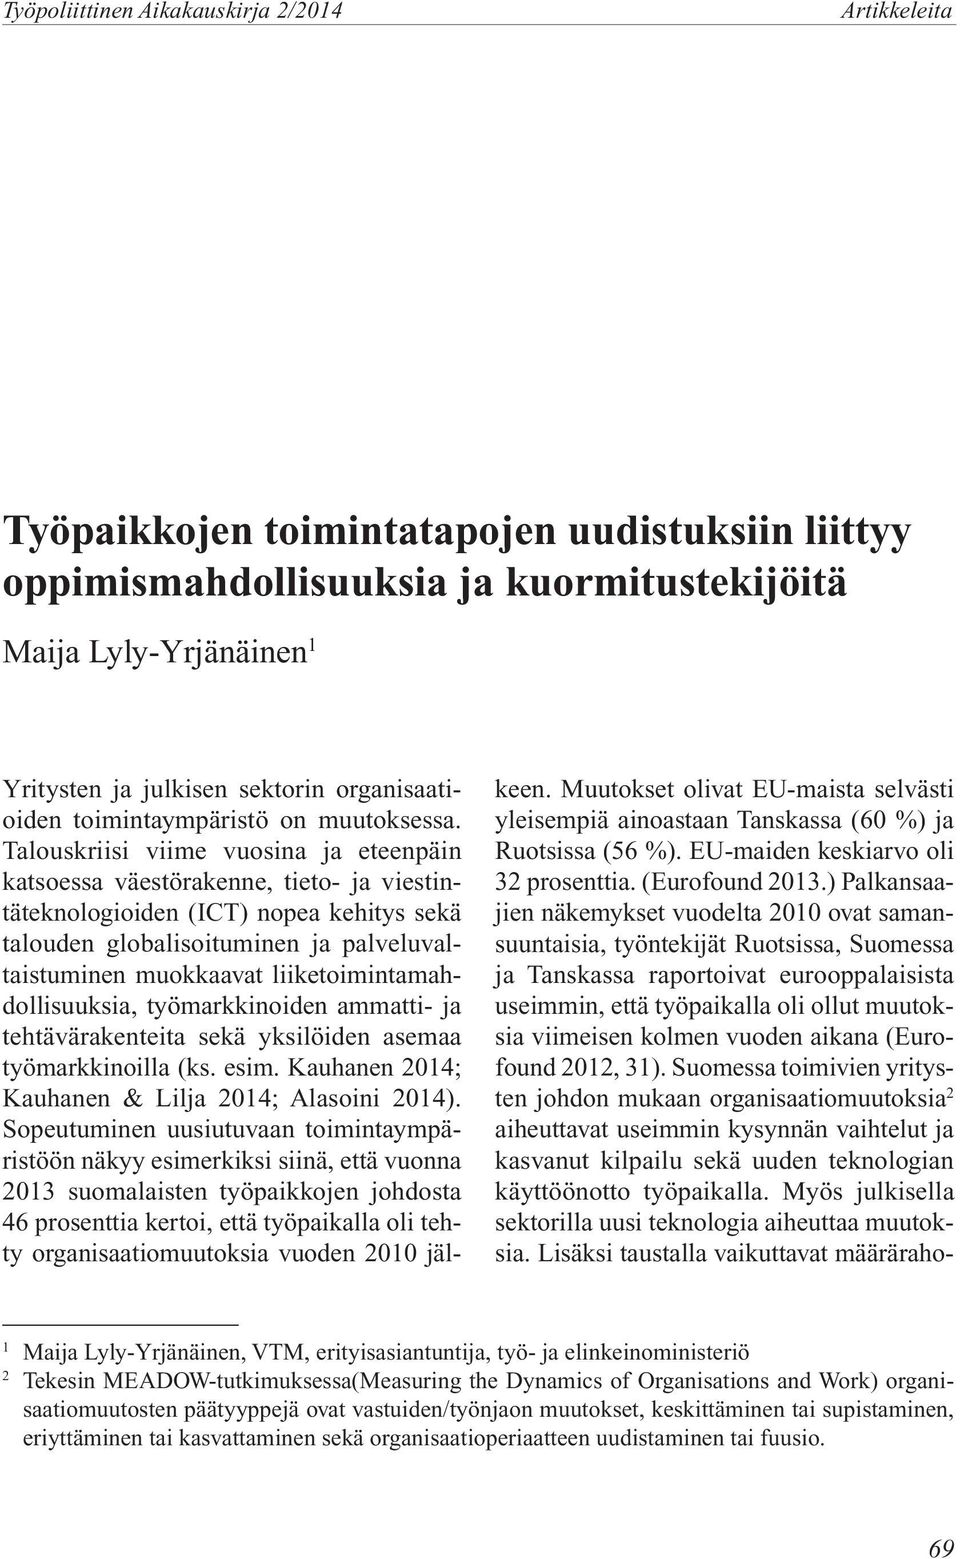 liiketoimintamahdollisuuksia, työmarkkinoiden ammatti- ja tehtävärakenteita sekä yksilöiden asemaa työmarkkinoilla (ks. esim. Kauhanen 2014; Kauhanen & Lilja 2014; Alasoini 2014).